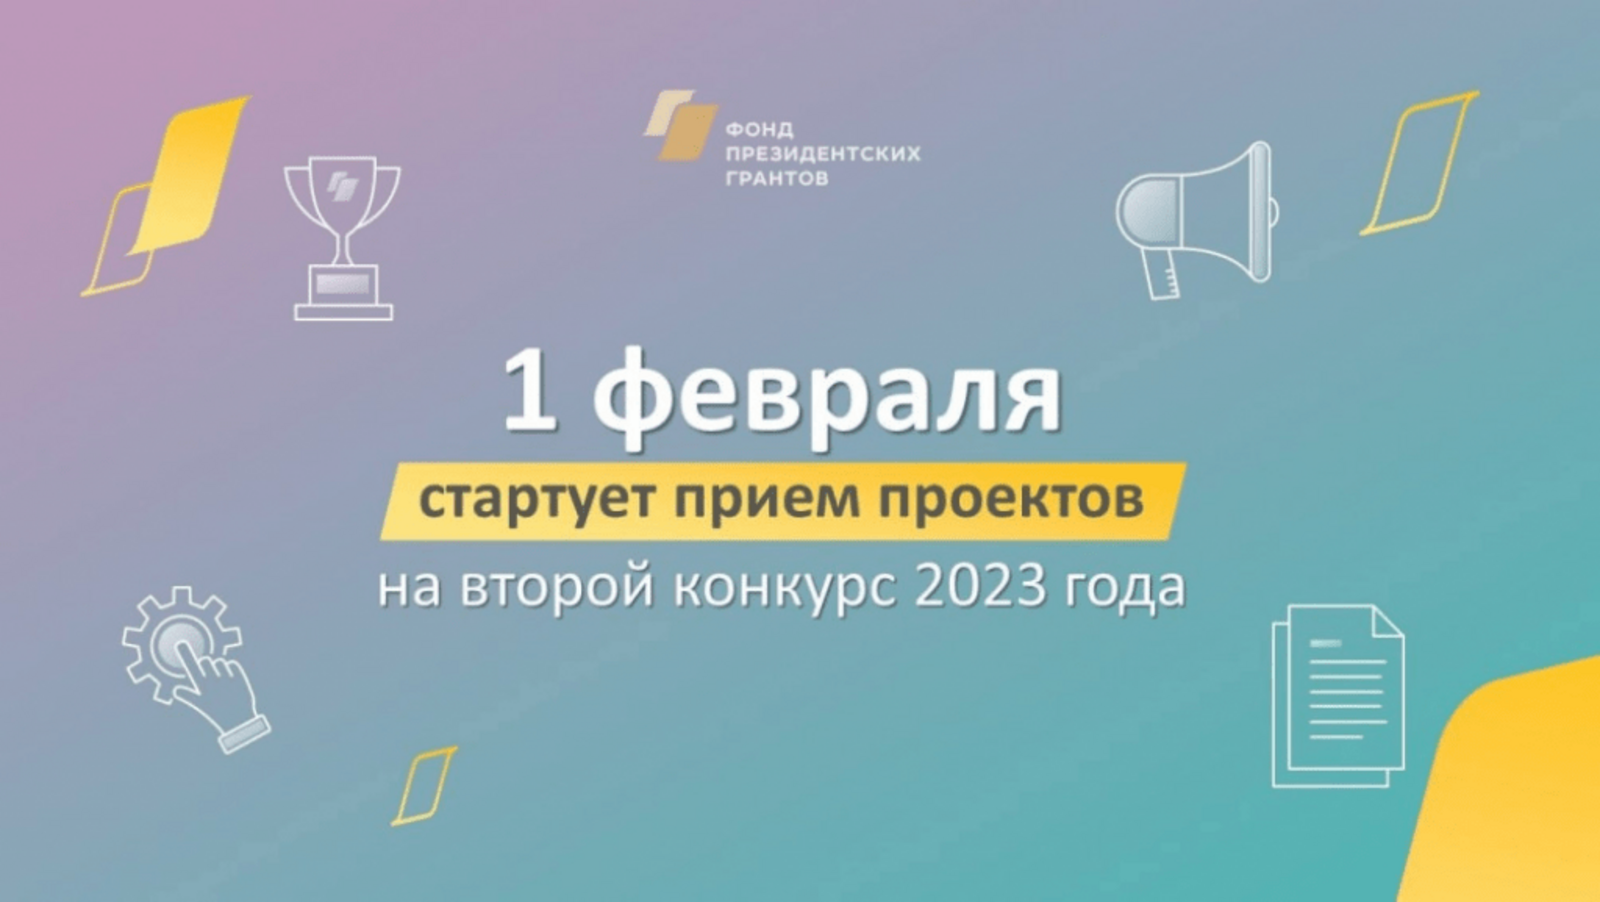 С 1 февраля НКО Башкортостана могут принять участие во втором конкурсе президентских грантов 2023 года